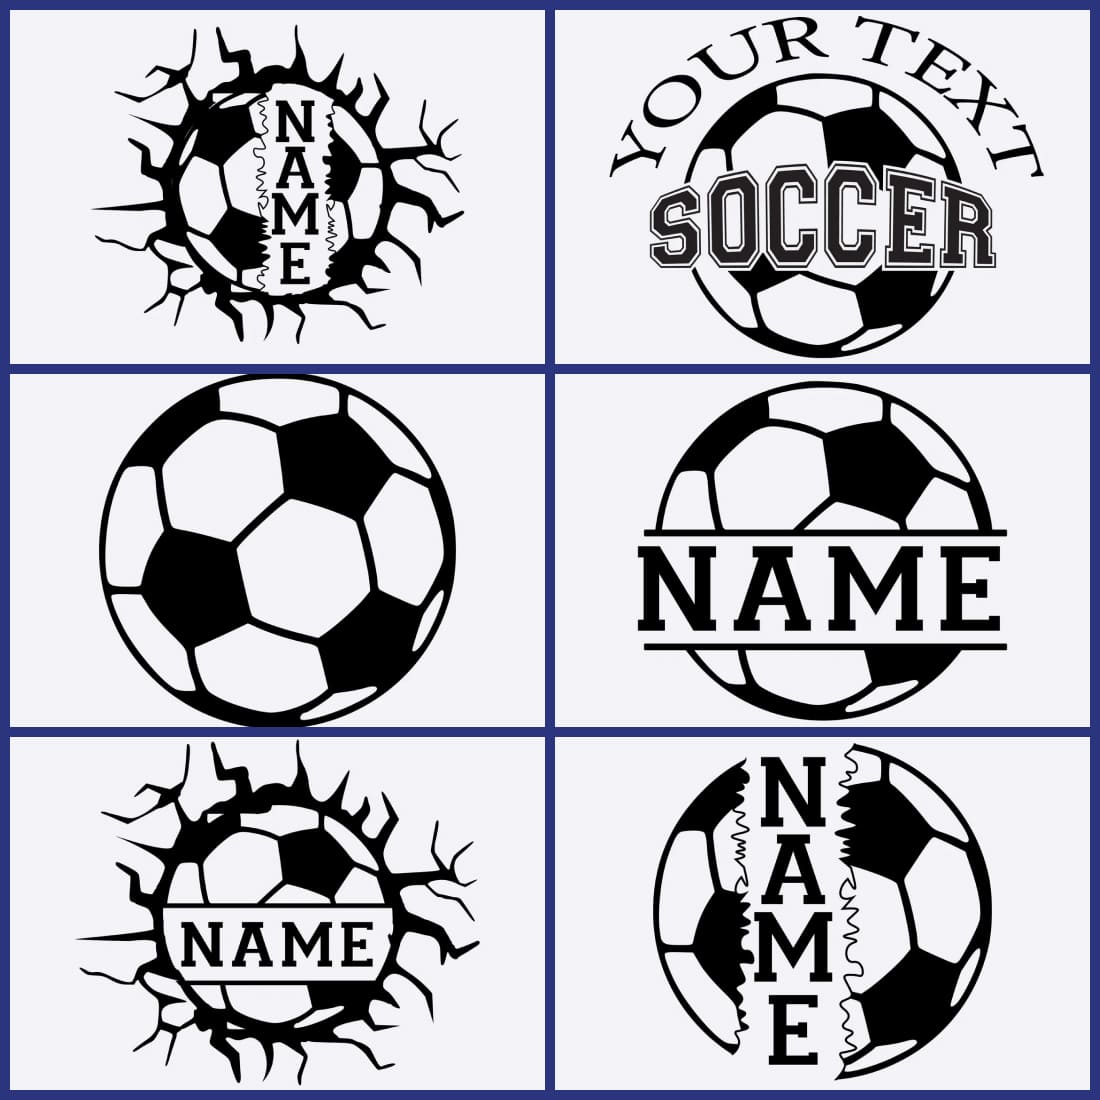 Name Soccer SVG cover.